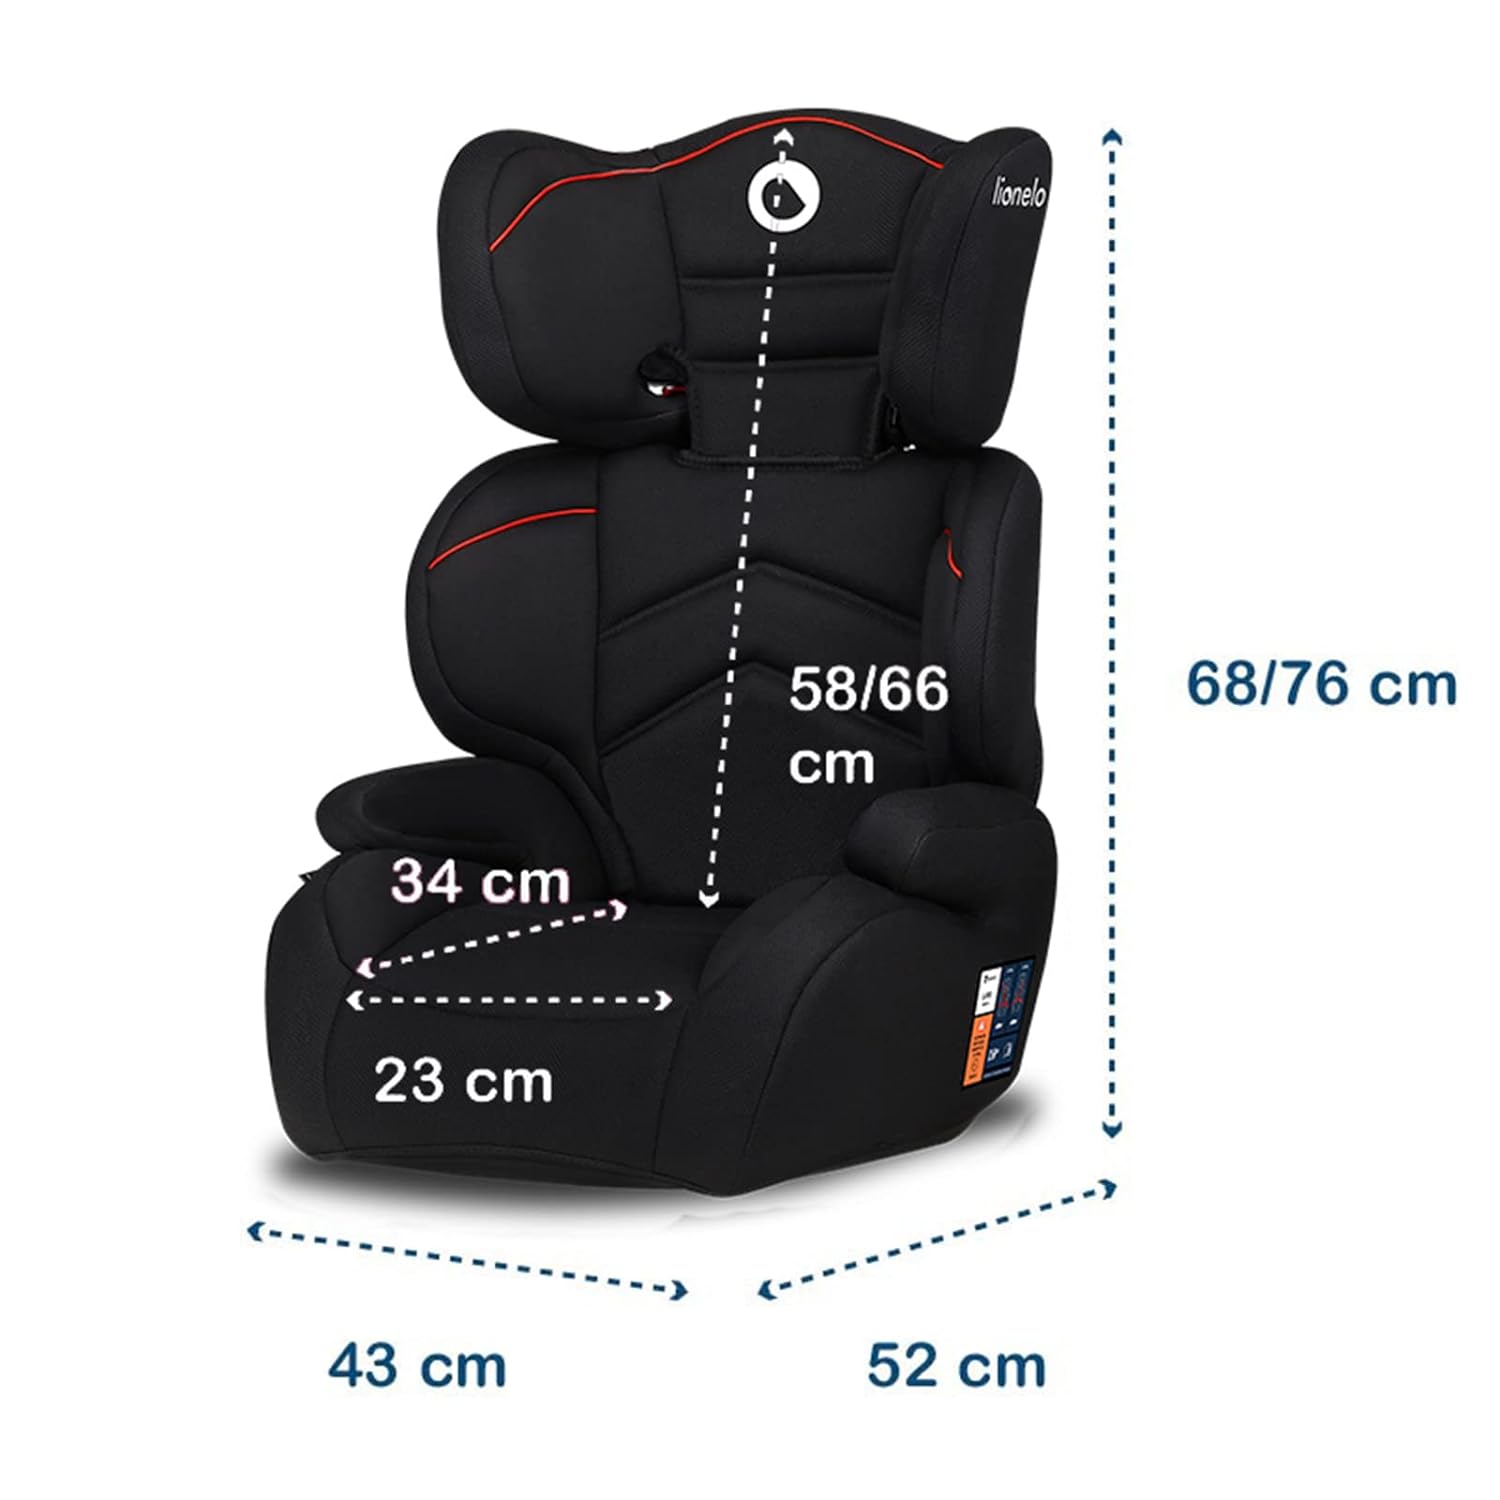 http://honestforwarder.com/uploads/product/kP3MQiYM11-lionelo-lars-child-seat-15-36-kg-car-seat-group-2-3-reinforced-headrest-with-adjustment-option-side-protection-armrests-impactguard-construction30.jpg